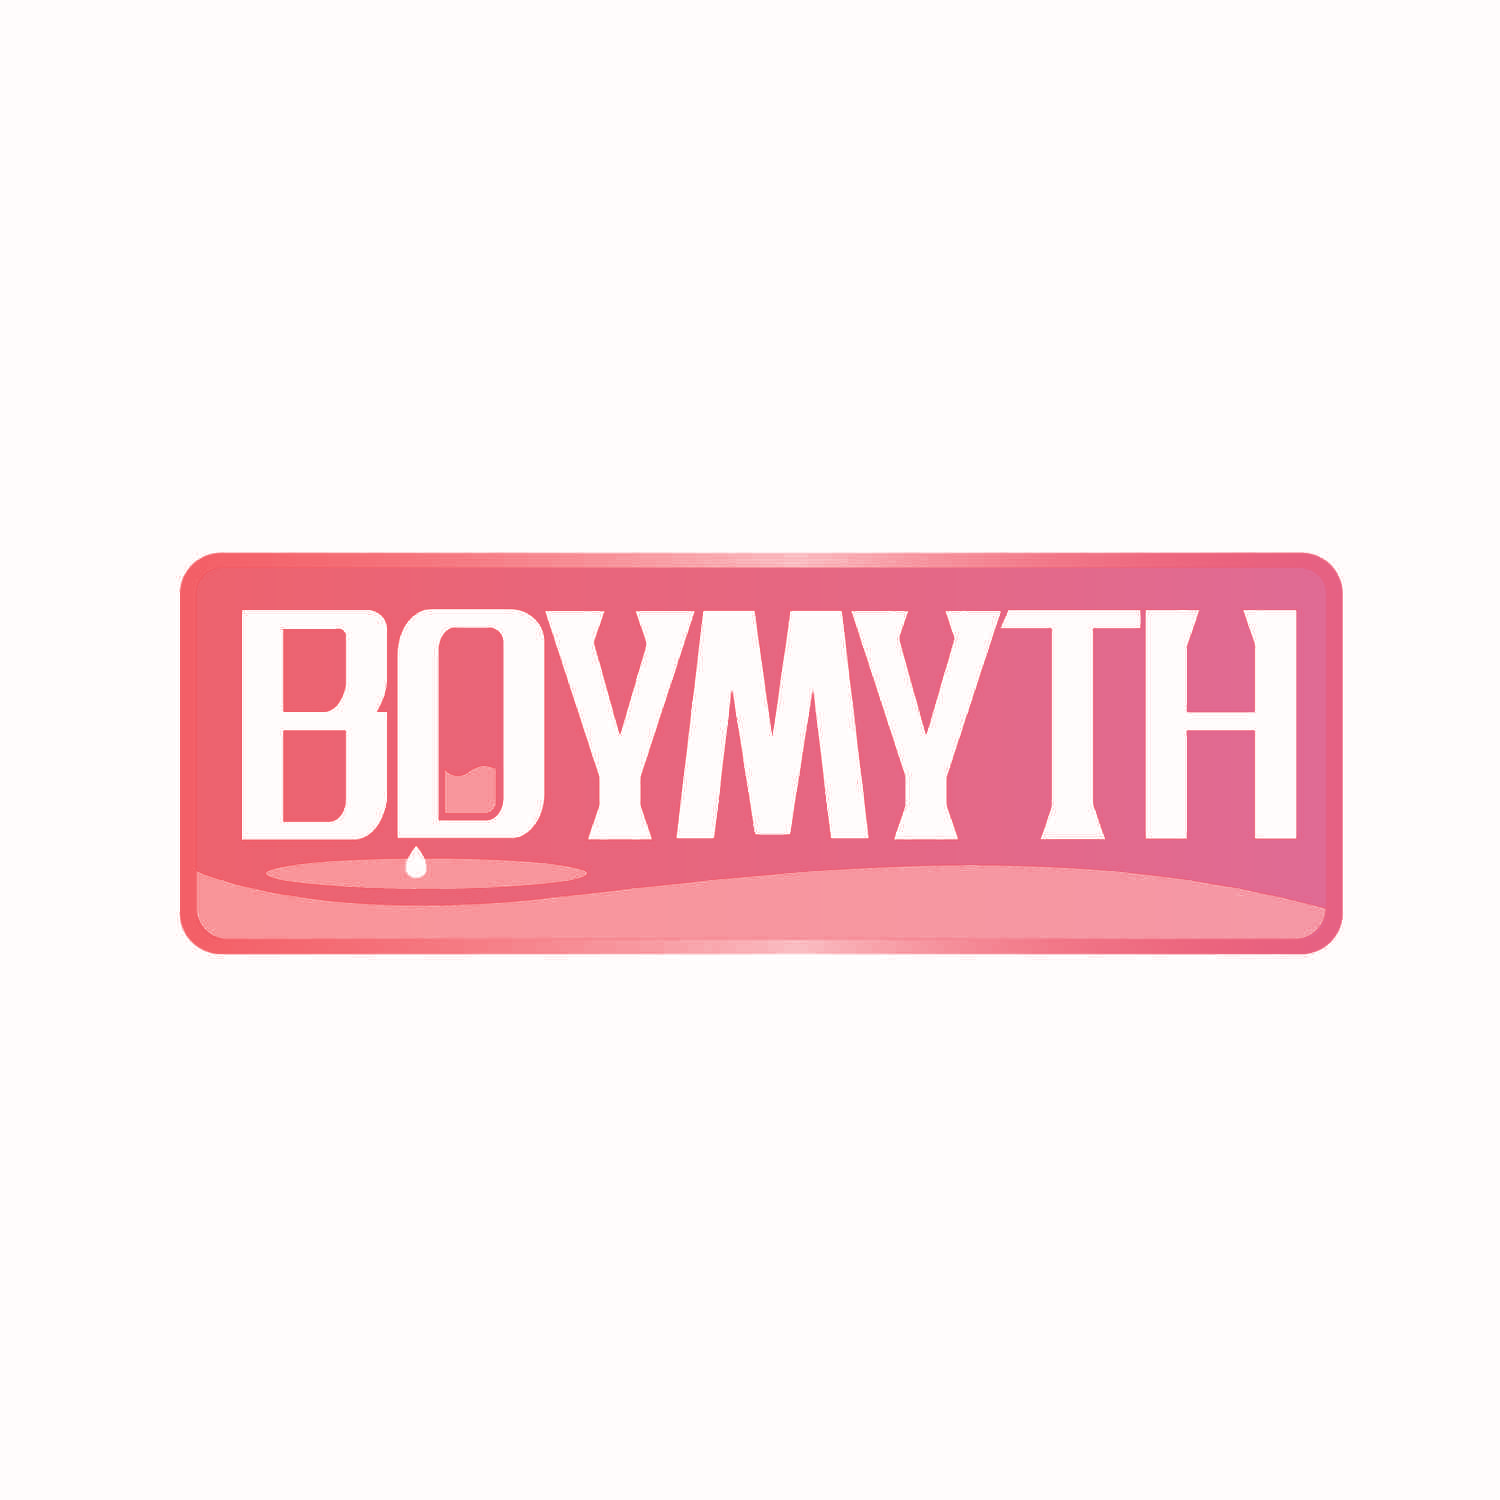 BOYMYTH